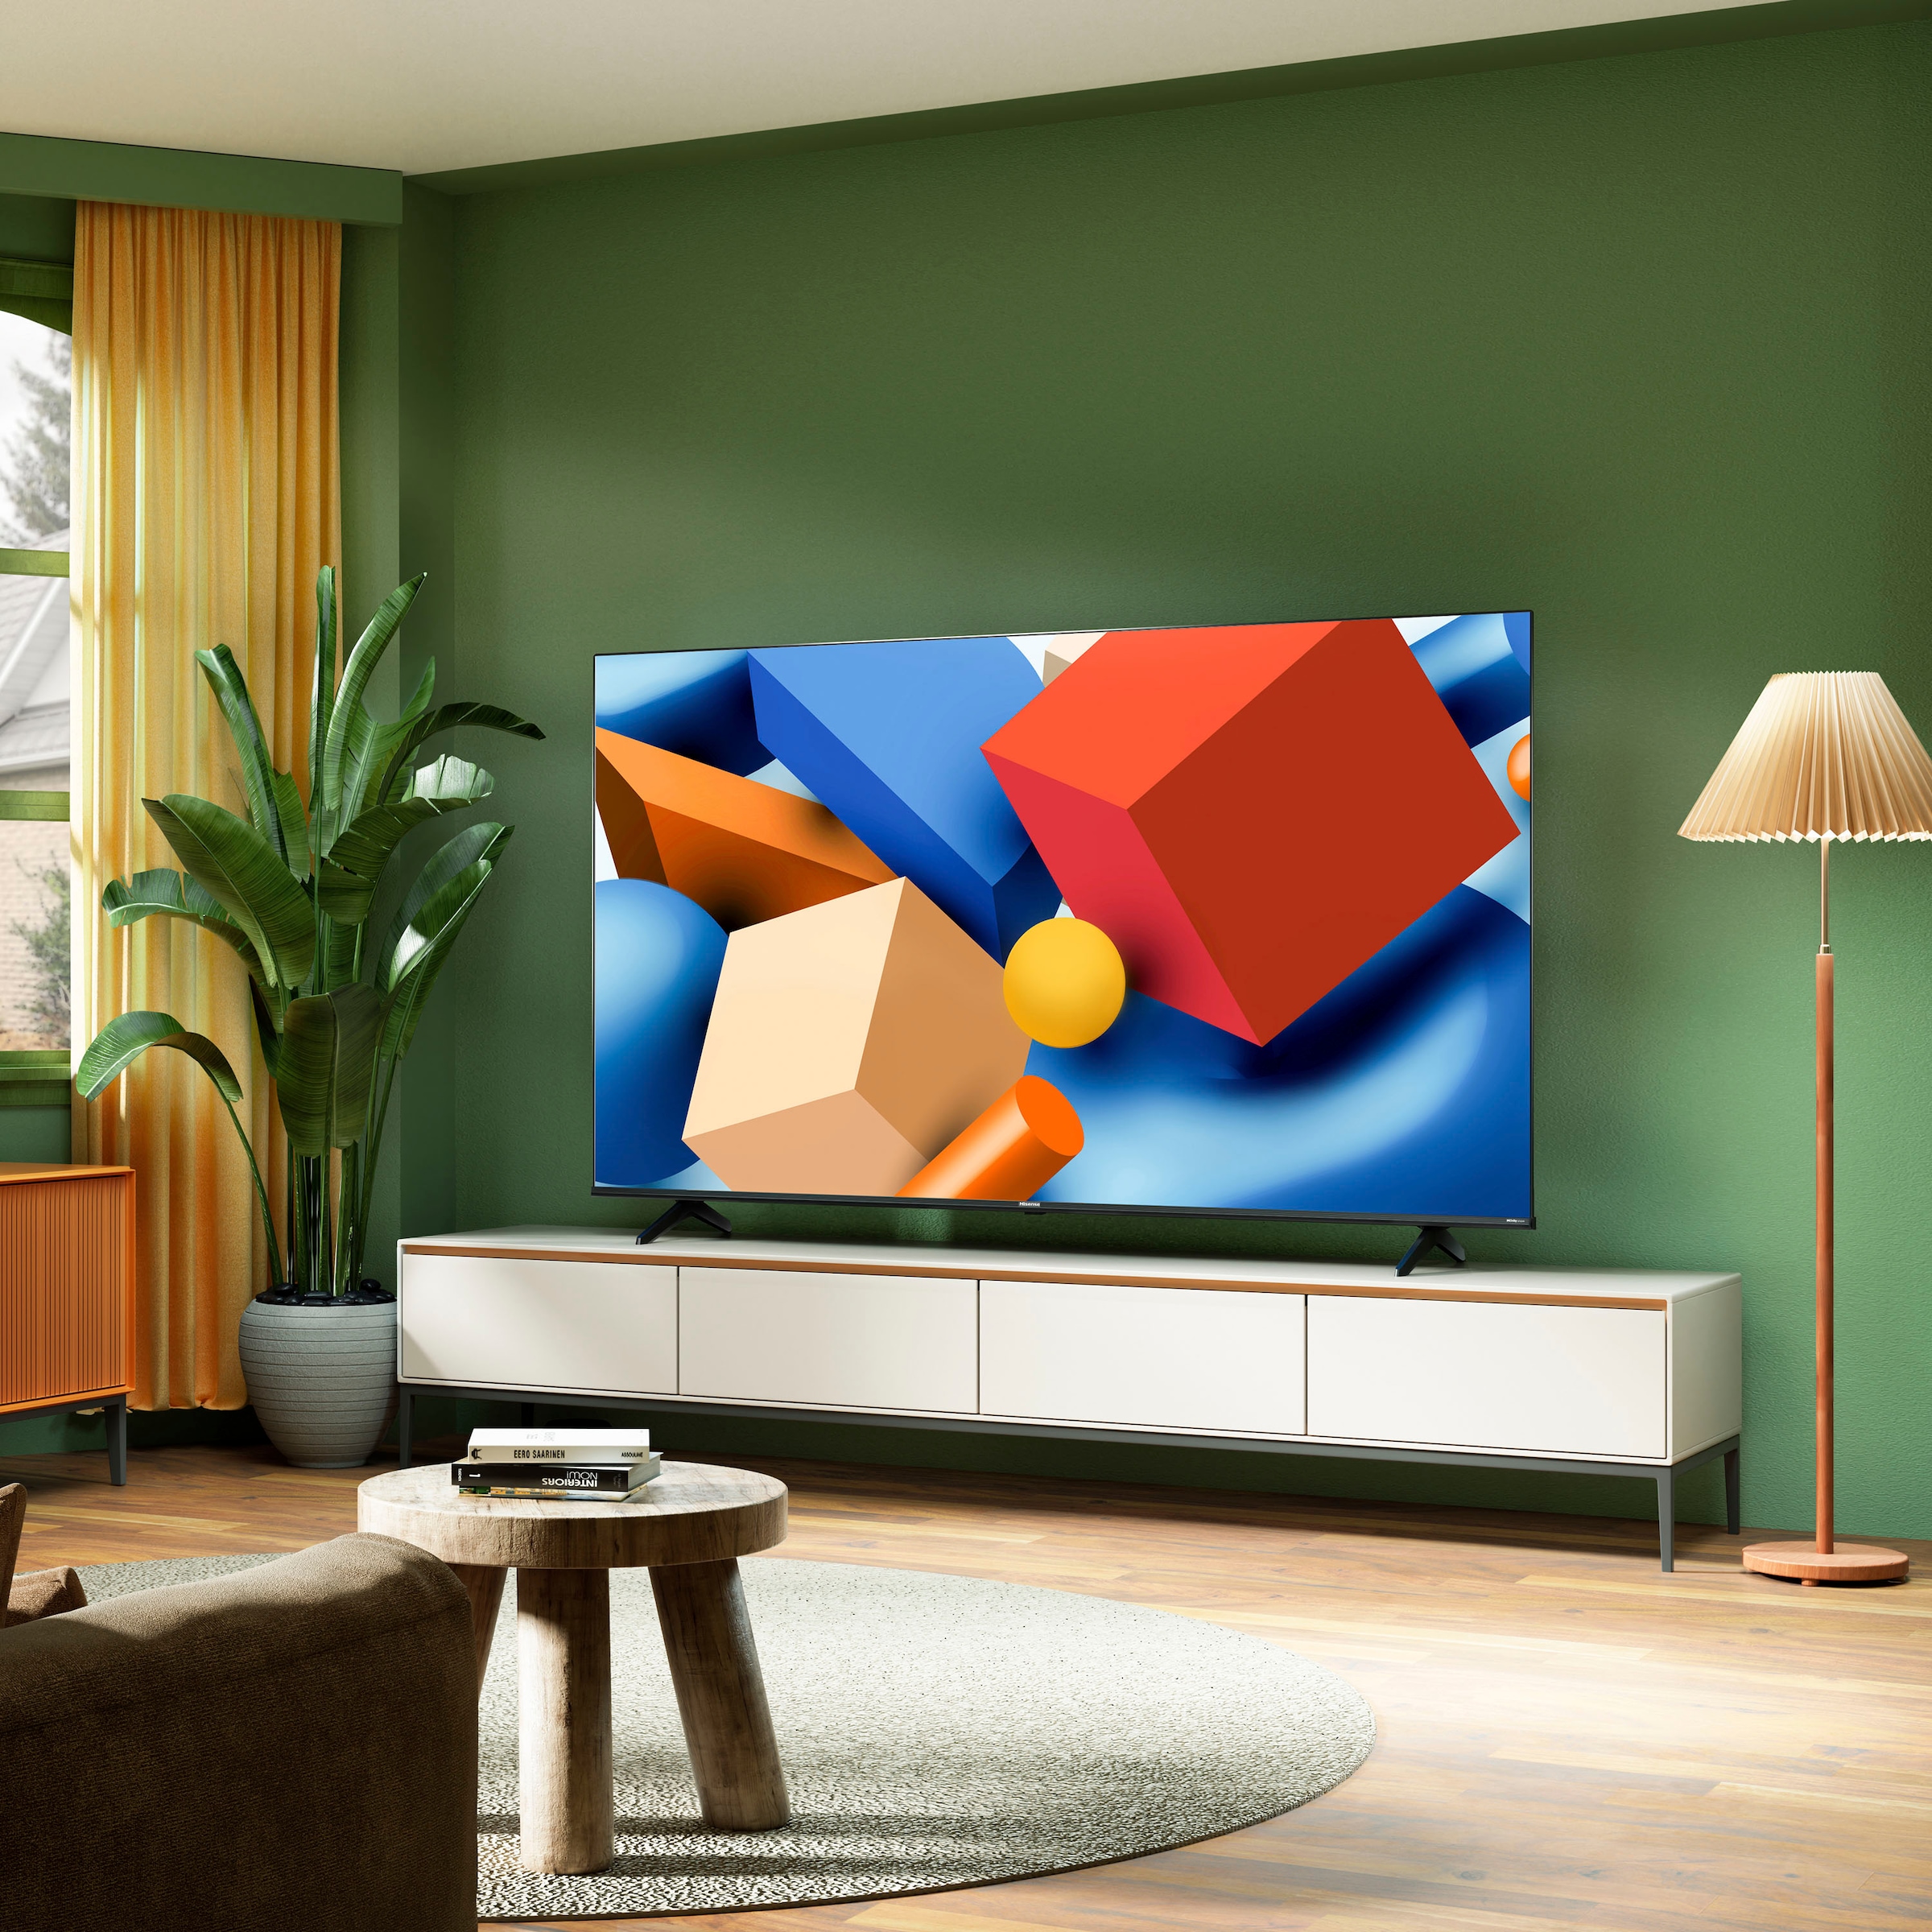 Hisense LED-Fernseher, 190 cm/75 Zoll, 4K Ultra HD, Smart-TV, Smart-TV, Dolby Vision, Triple Tuner DVB-C/S/S2/T/T2